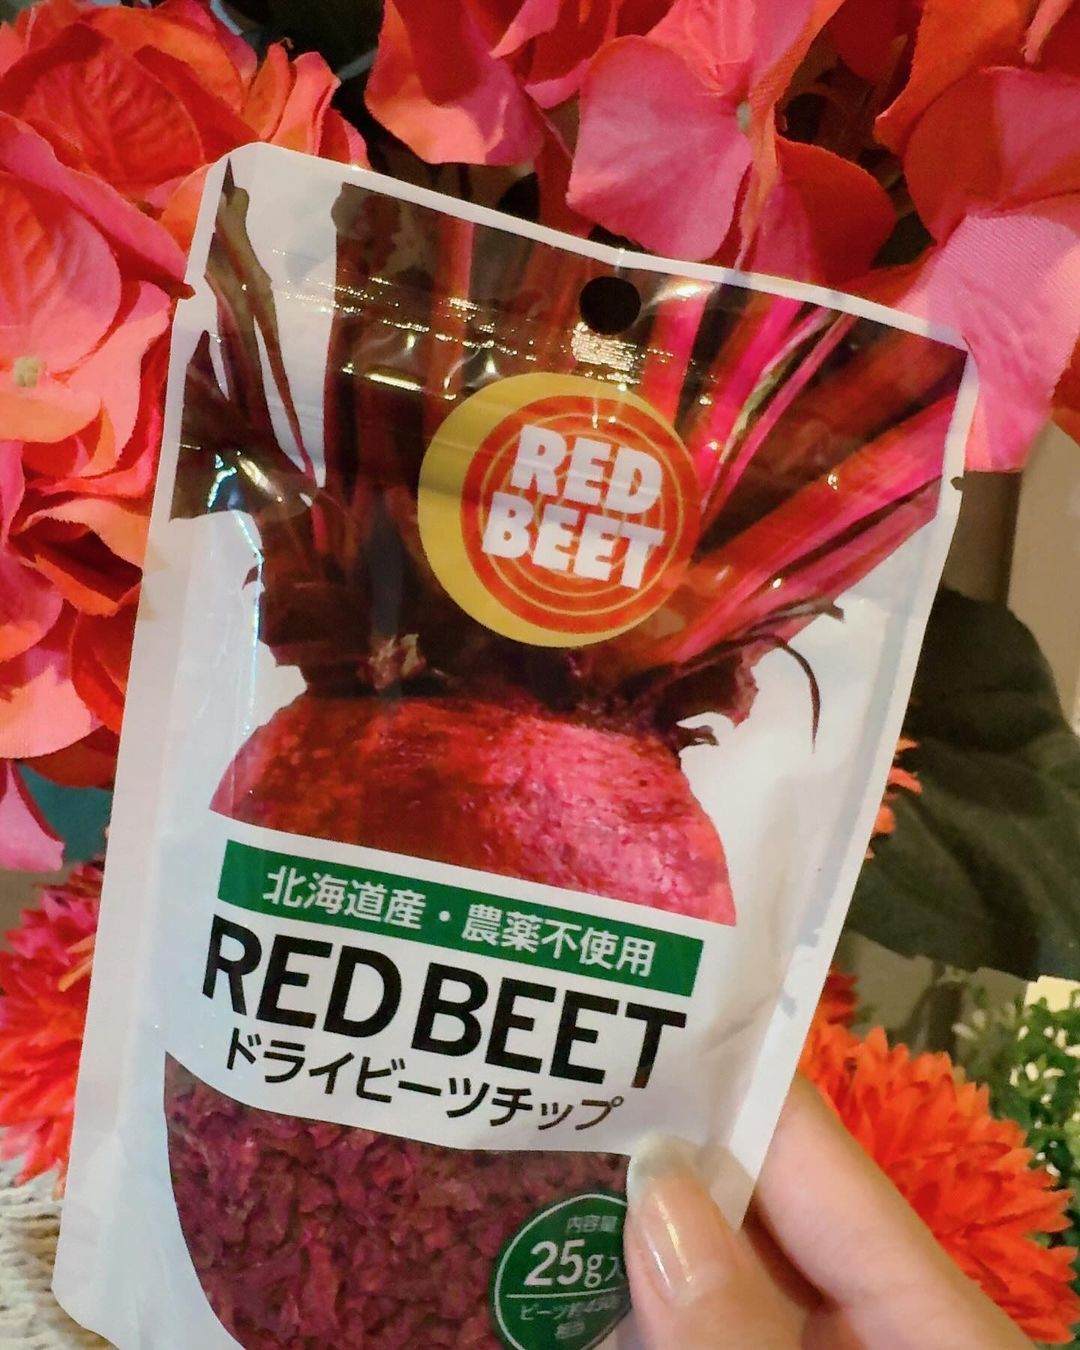 口コミ投稿：#PR #塩水港精糖株式会社RED BEET ドライビーツチップをお試ししました。こちらはス…